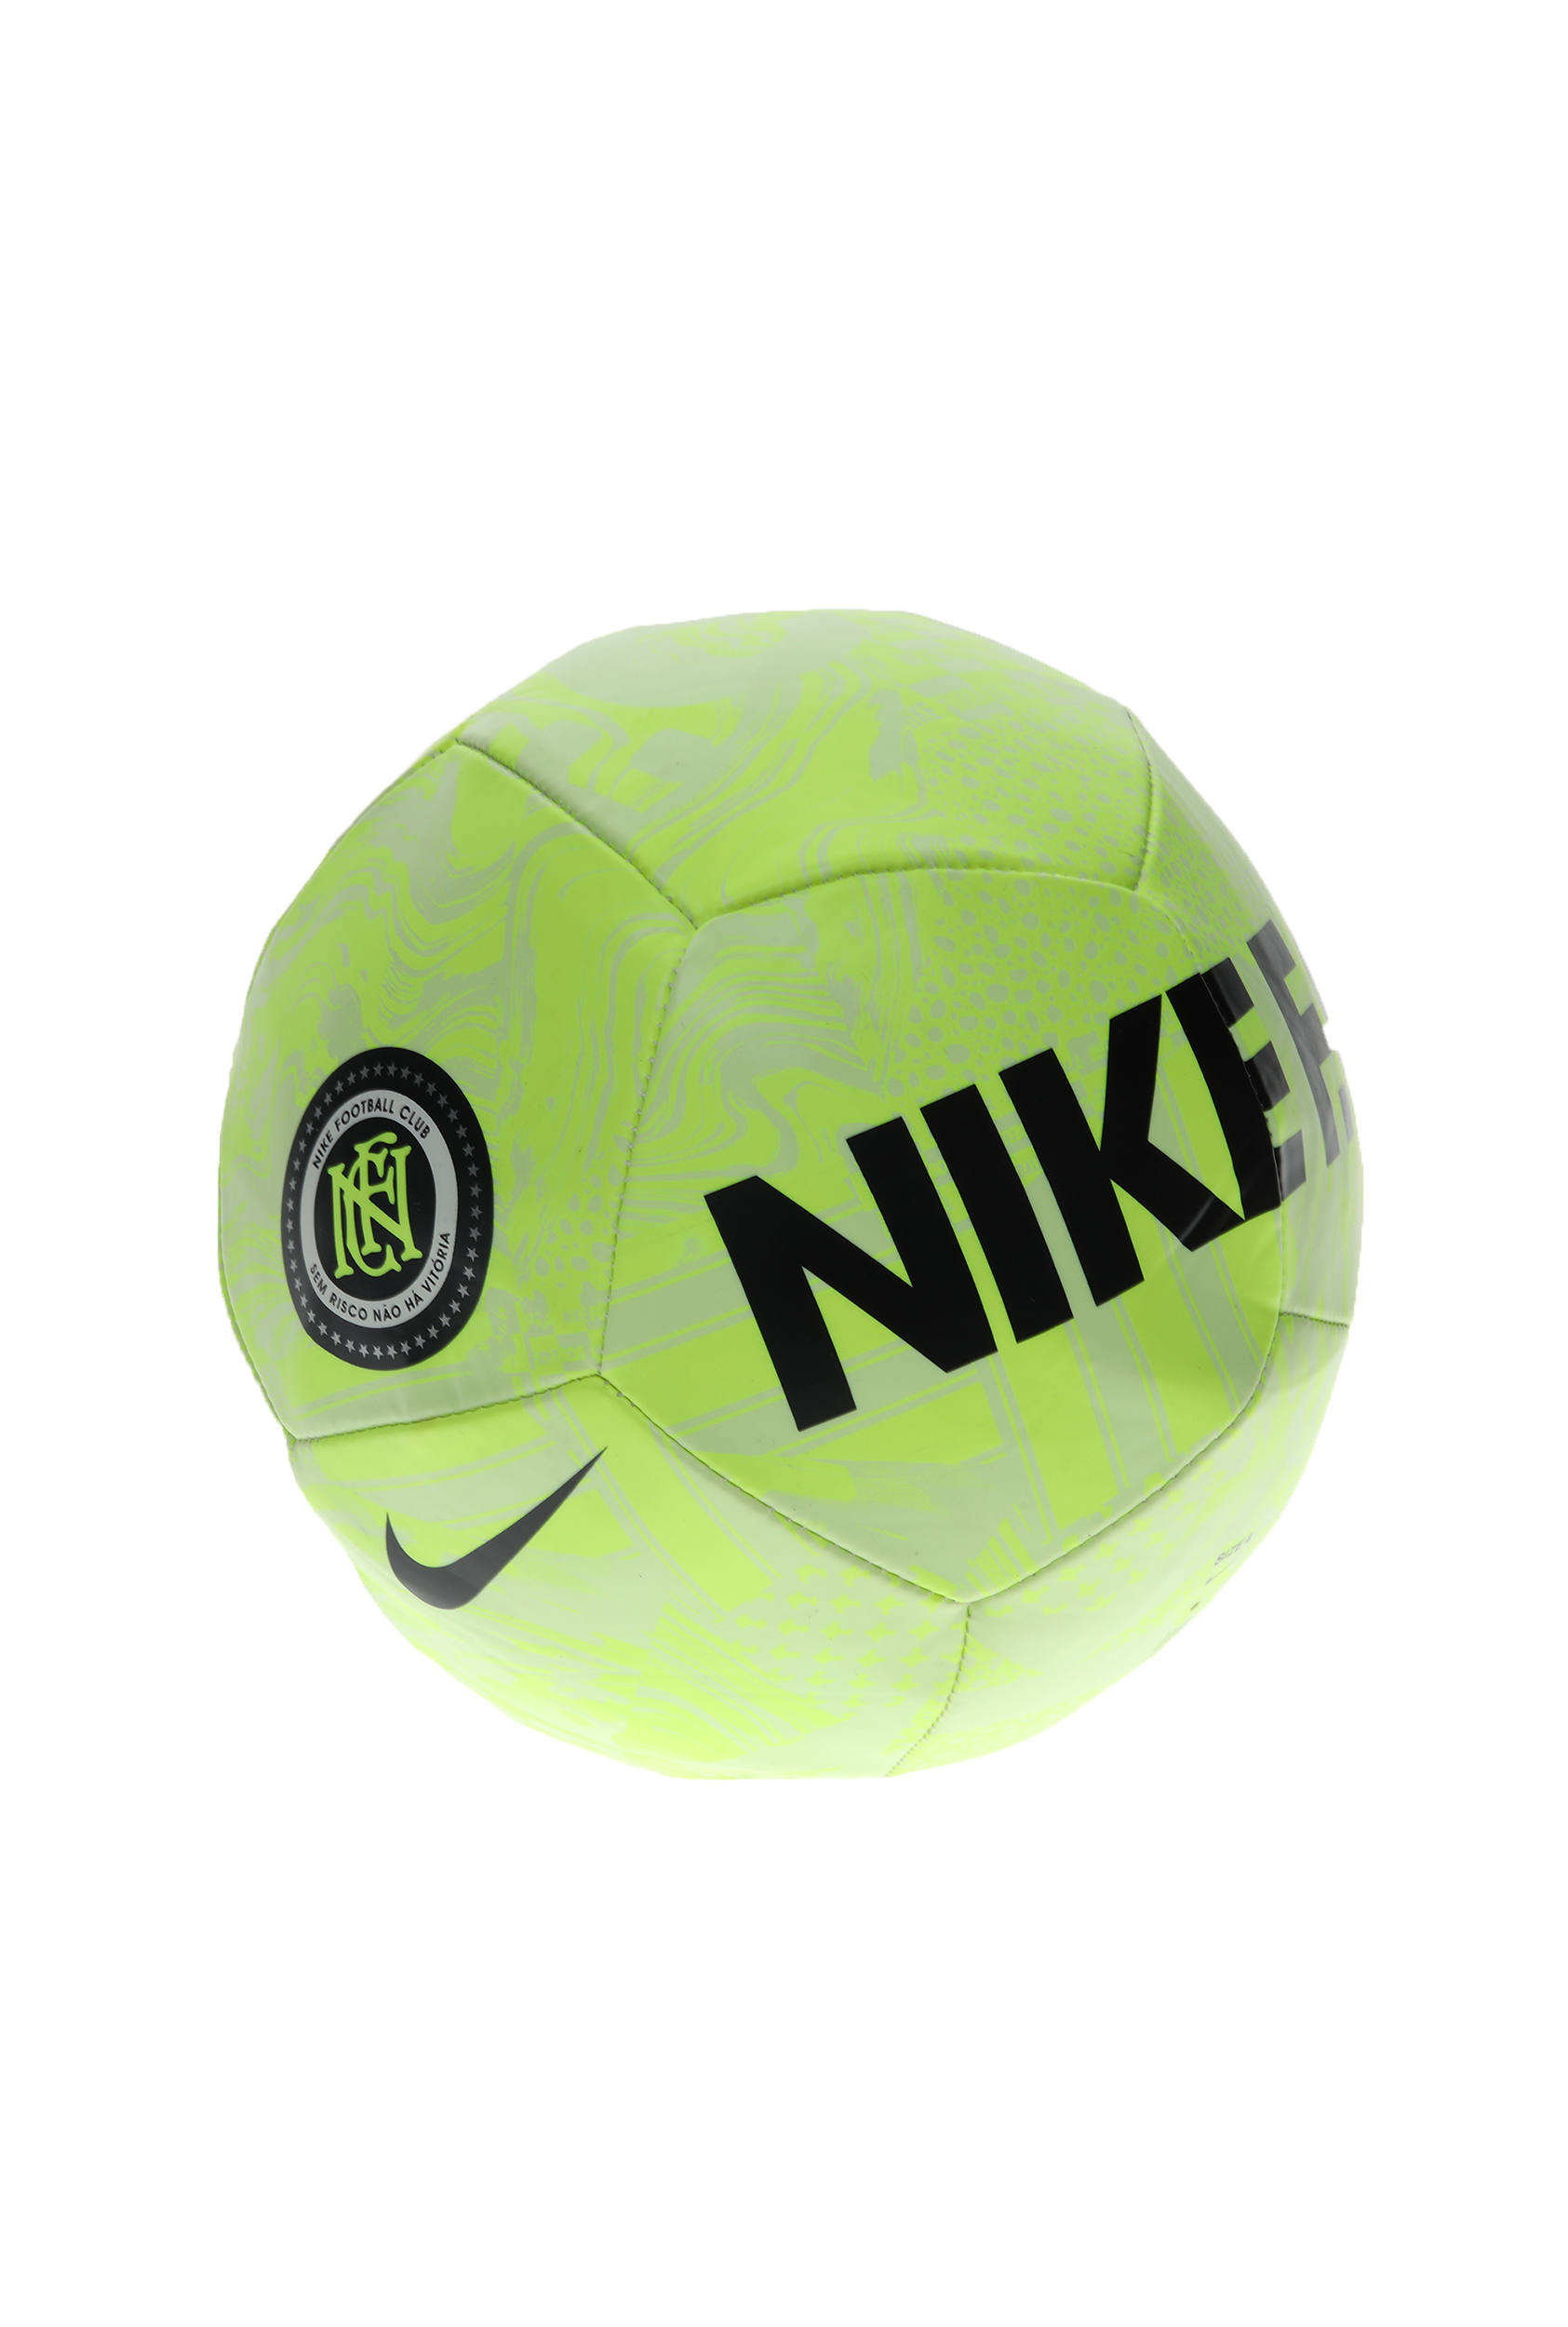 Γυναικεία/Αξεσουάρ/Αθλητικά Είδη/Μπάλες NIKE - Μπάλα football ΝΙΚΕ F.C. - HO20 κίτρινη μαύρη